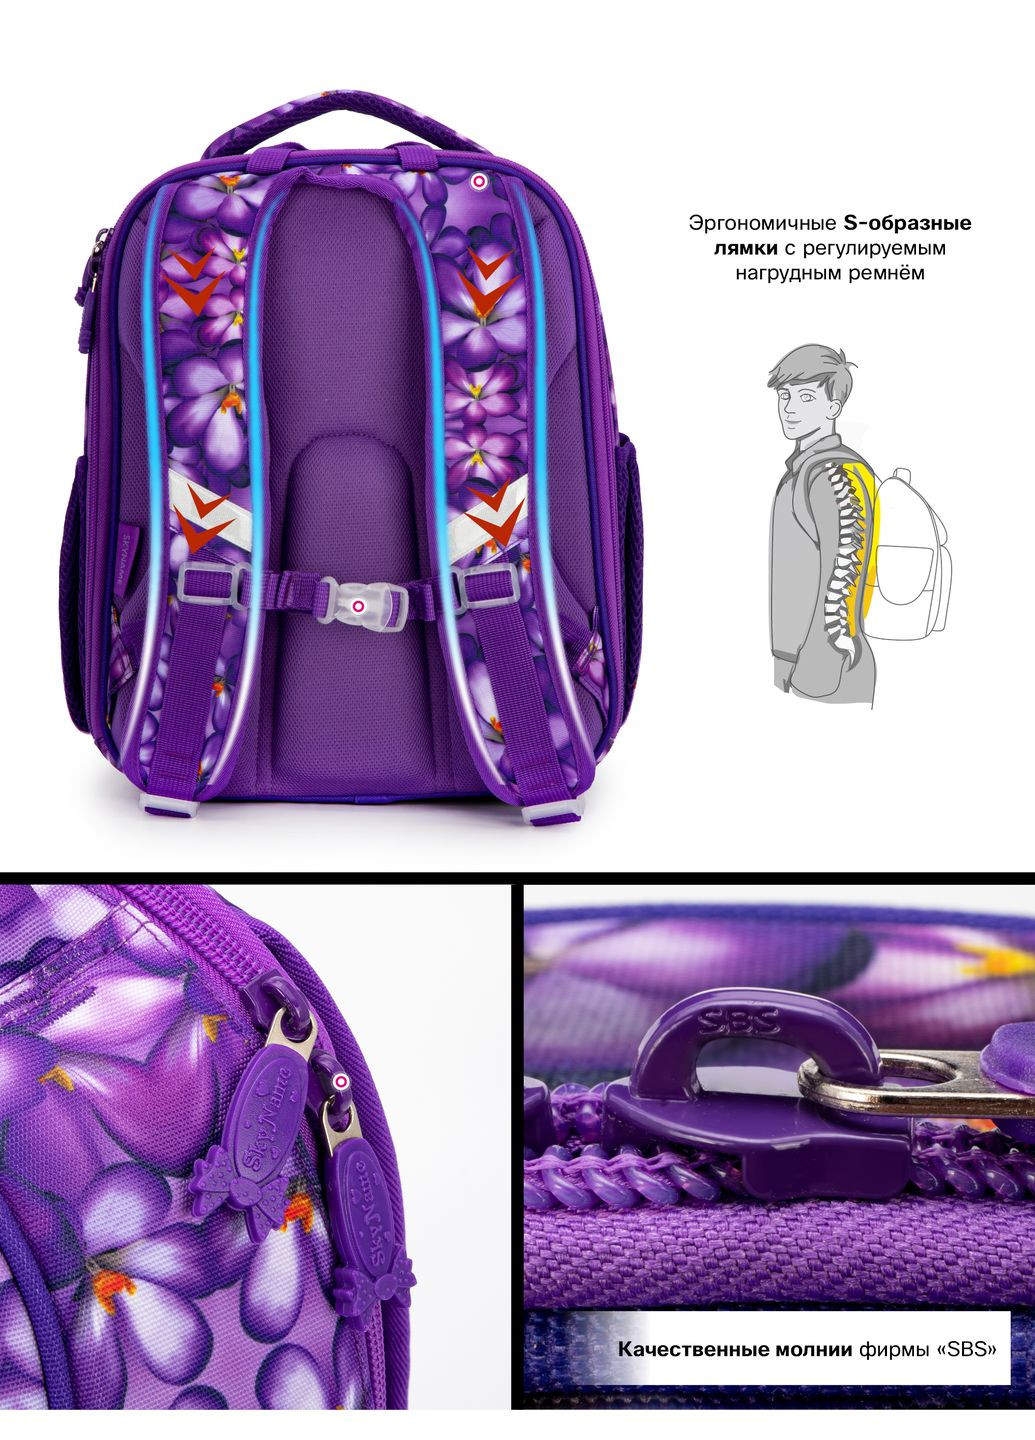 Шкільний ортопедичний рюкзак (ранець) бузковий для дівчинки /SkyName з Пандою 36х30х16 см для початкової школи (5025) Winner (293815070)